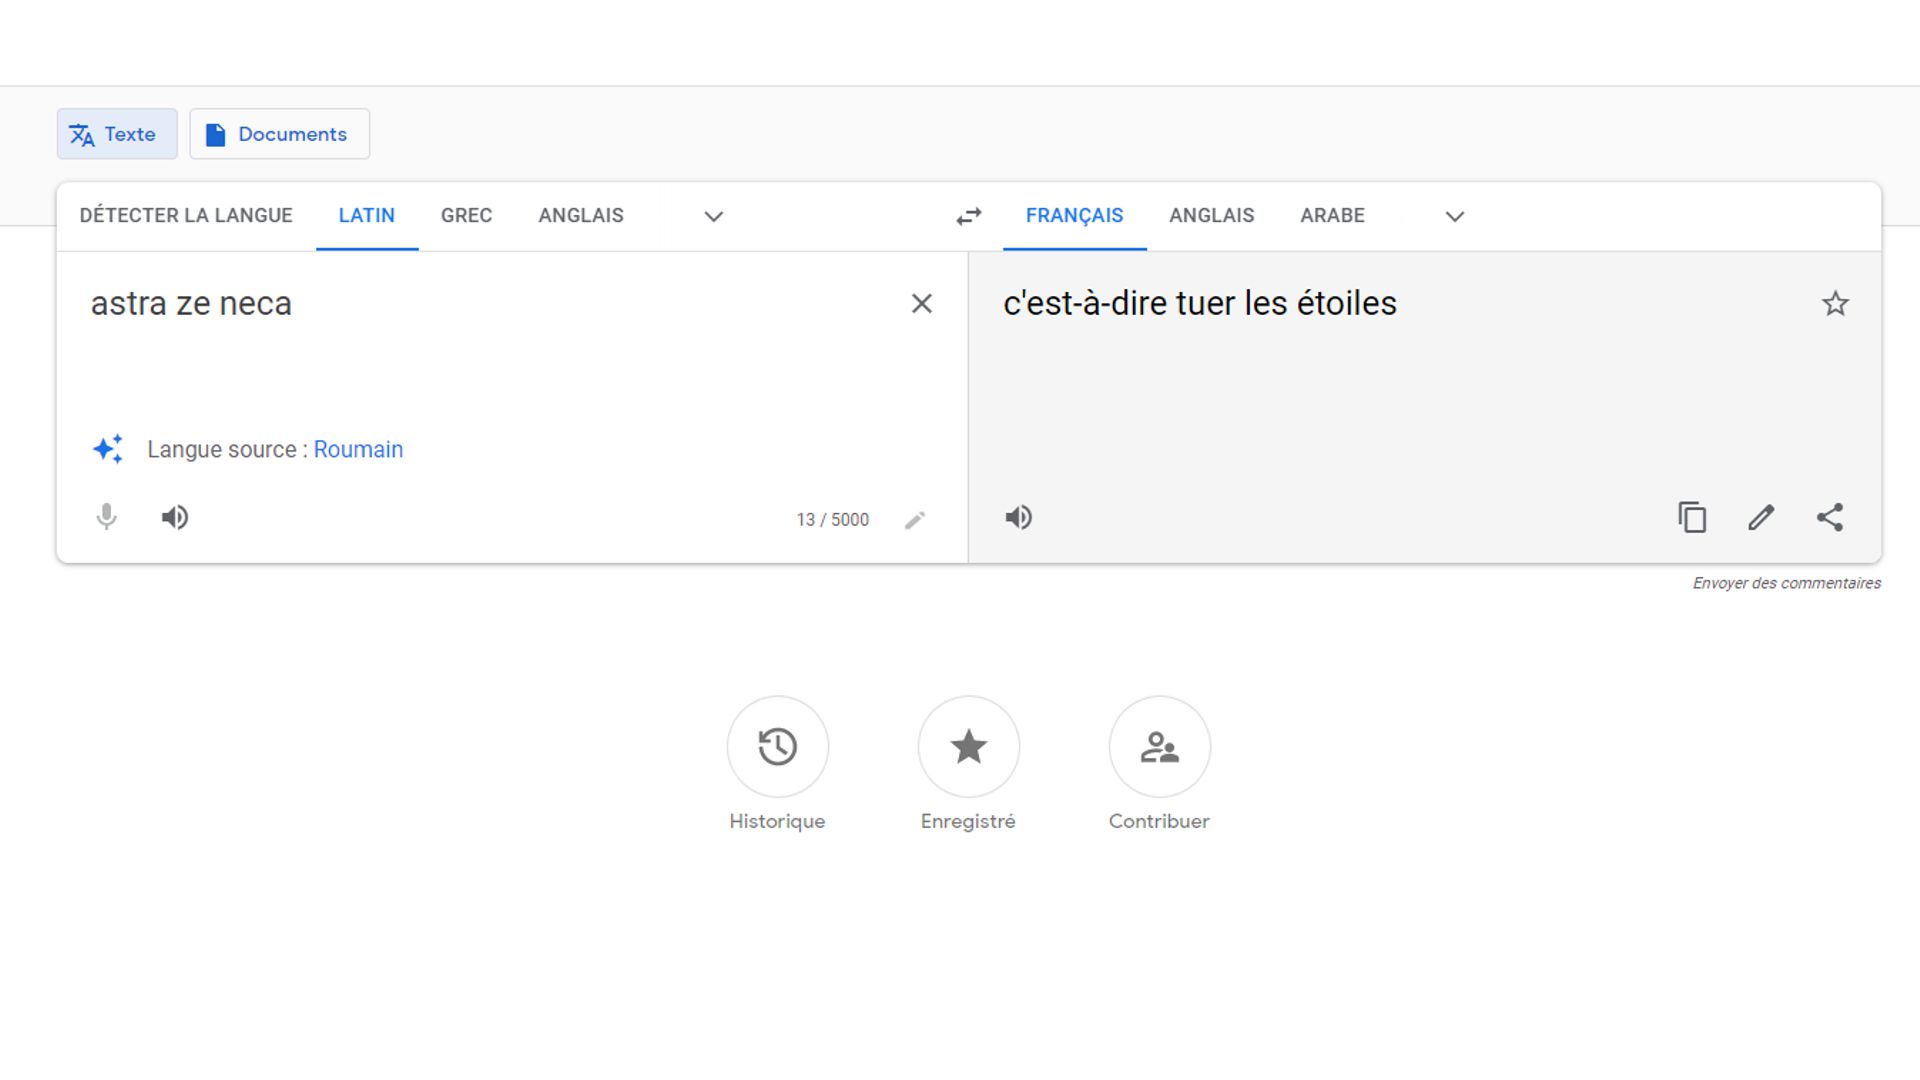 Traduction du latin vers le français proposée par Google Traduction pour "Astra Ze Neca"